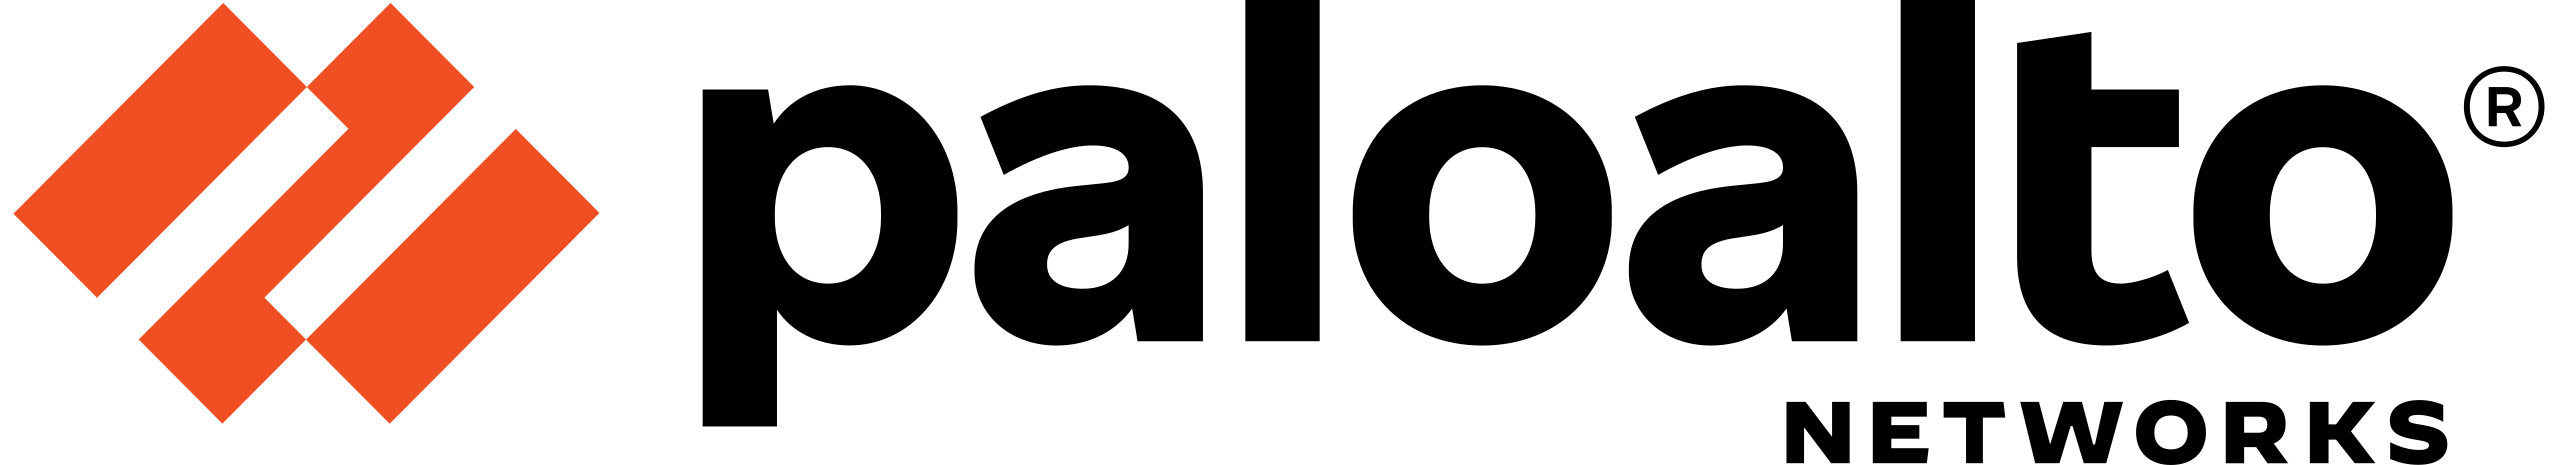 Palo Alto Networks vendor logo